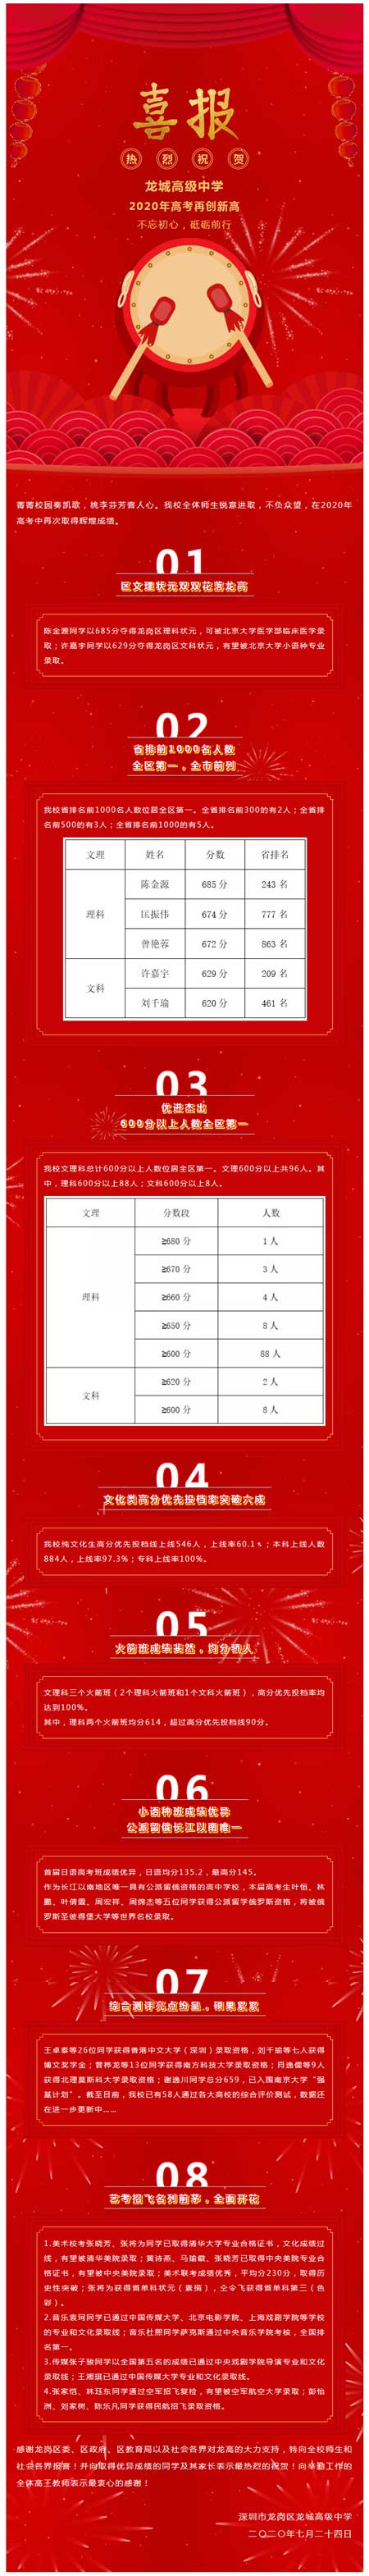 深圳龙城高级中学2020年高考成绩一览